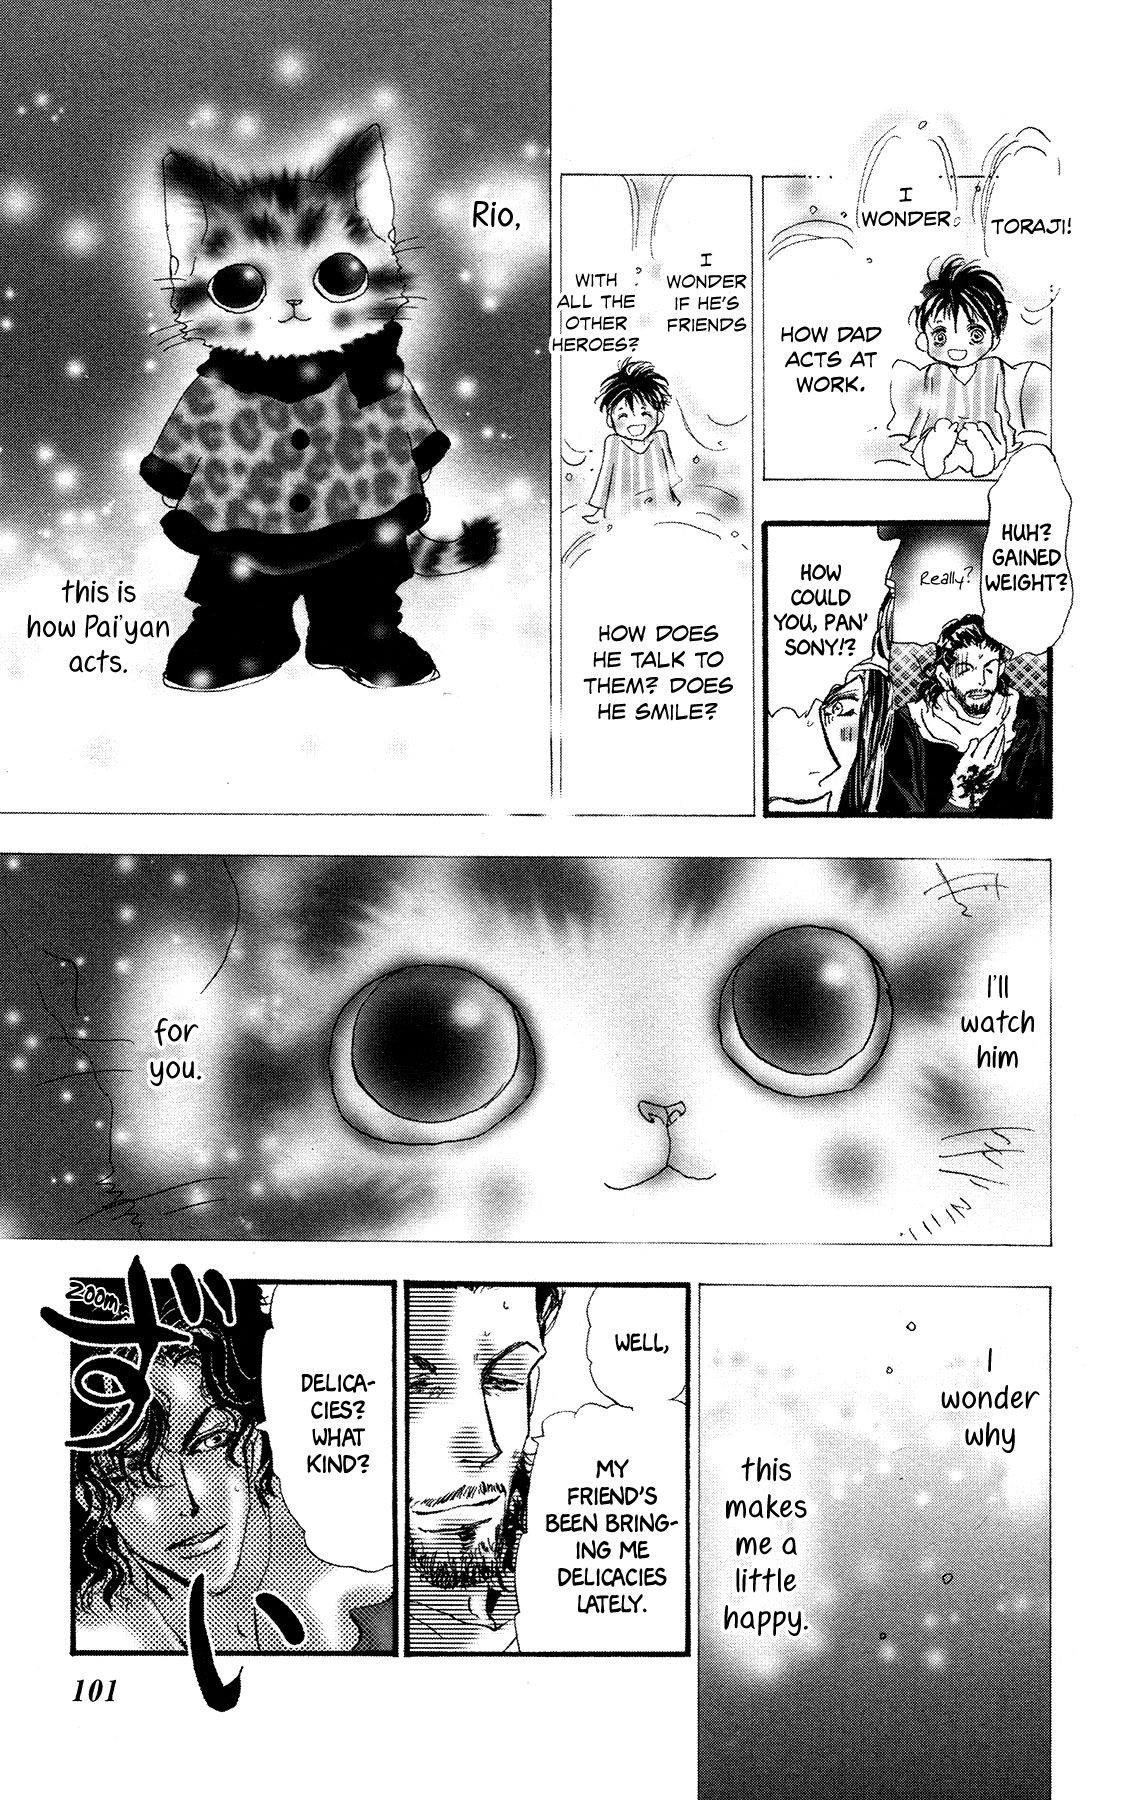 Neko Mix Genkitan Toraji Vol. 5 Ch. 16 The Hero, the Hero, and the Pauper Mouse